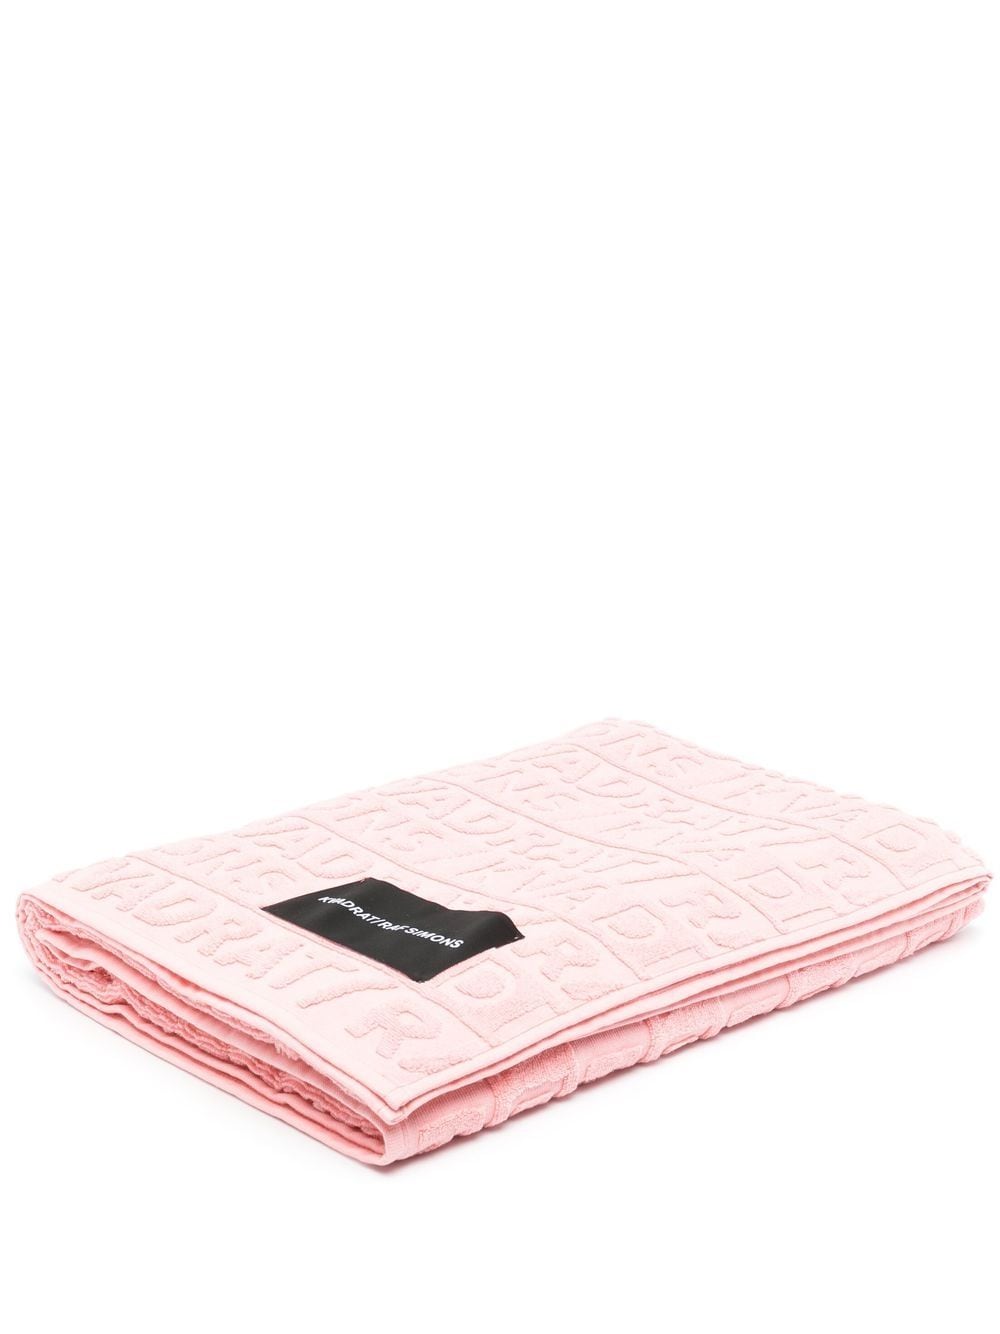 Kvadrat x Raf Simons beach towel - Pink von Kvadrat